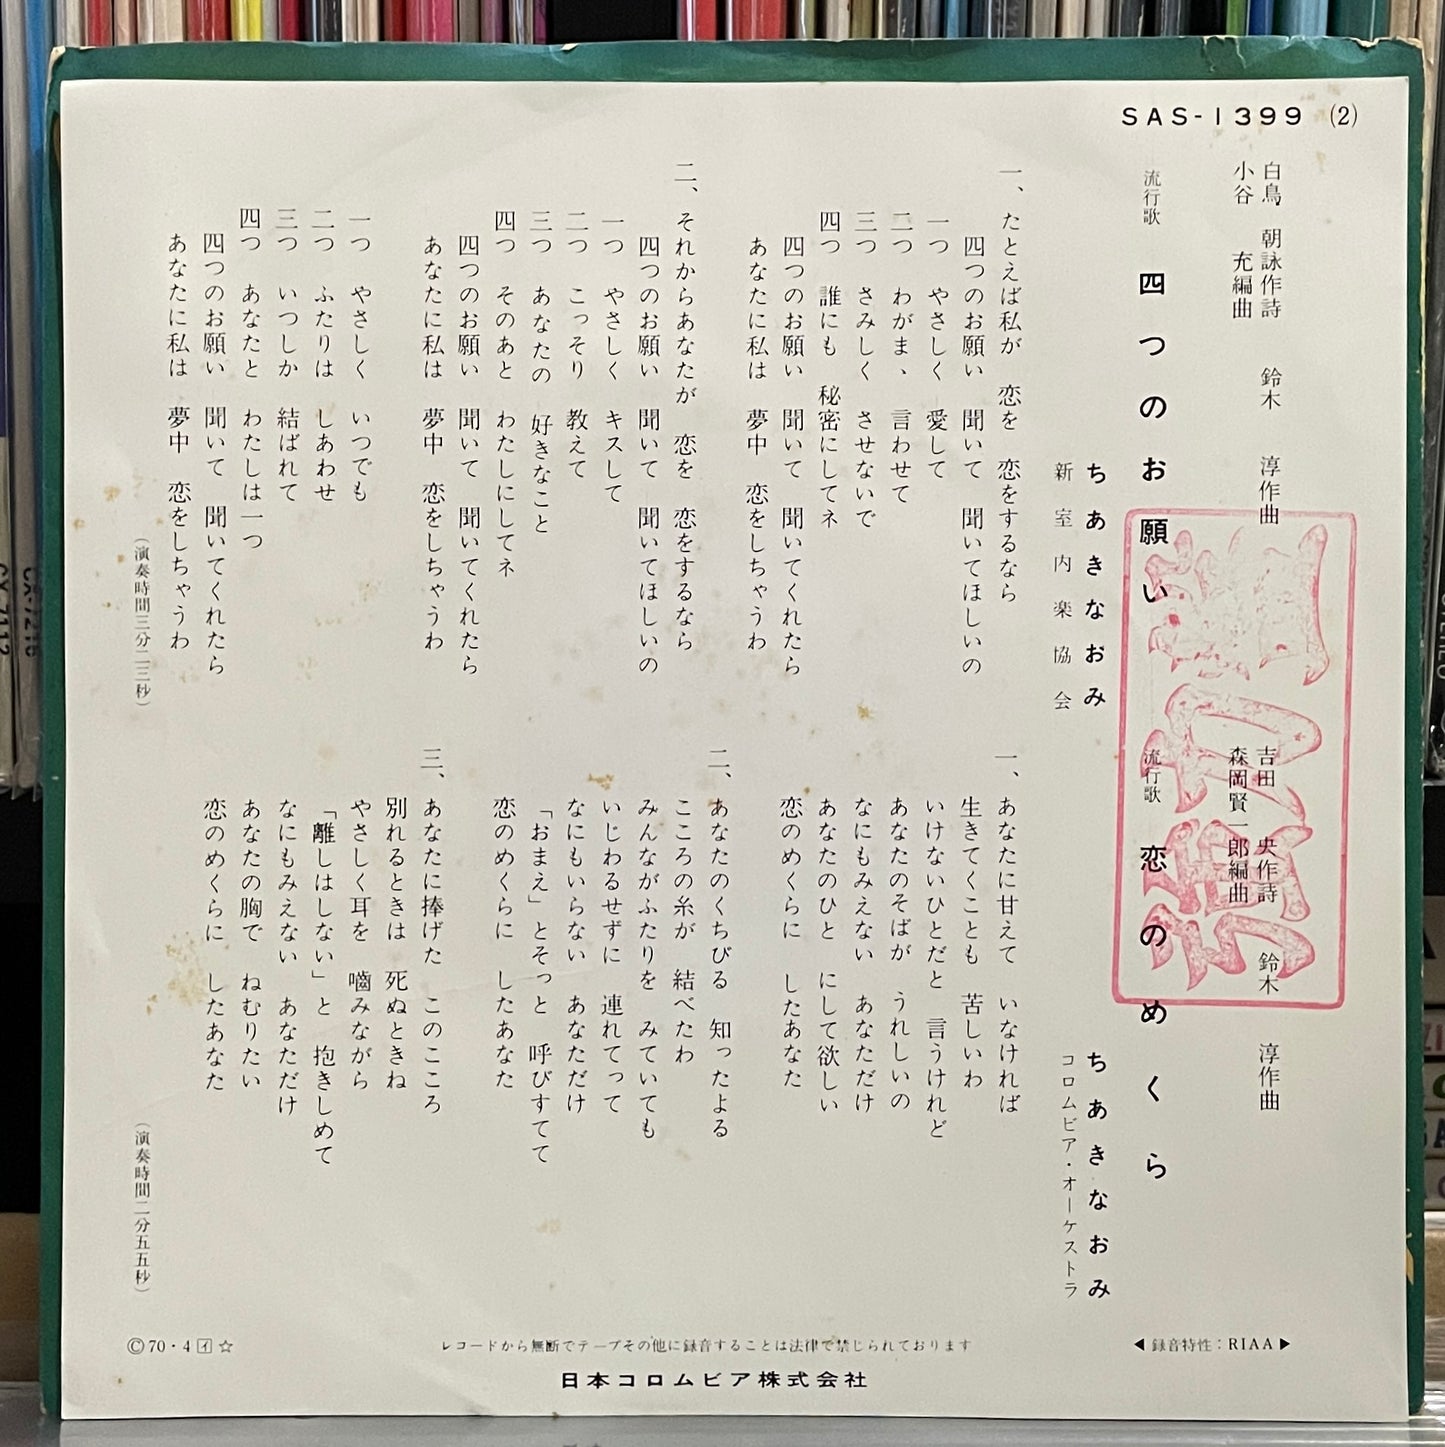 ちあきなおみ “四つのお願い” c/w “恋のめくら” (1970)